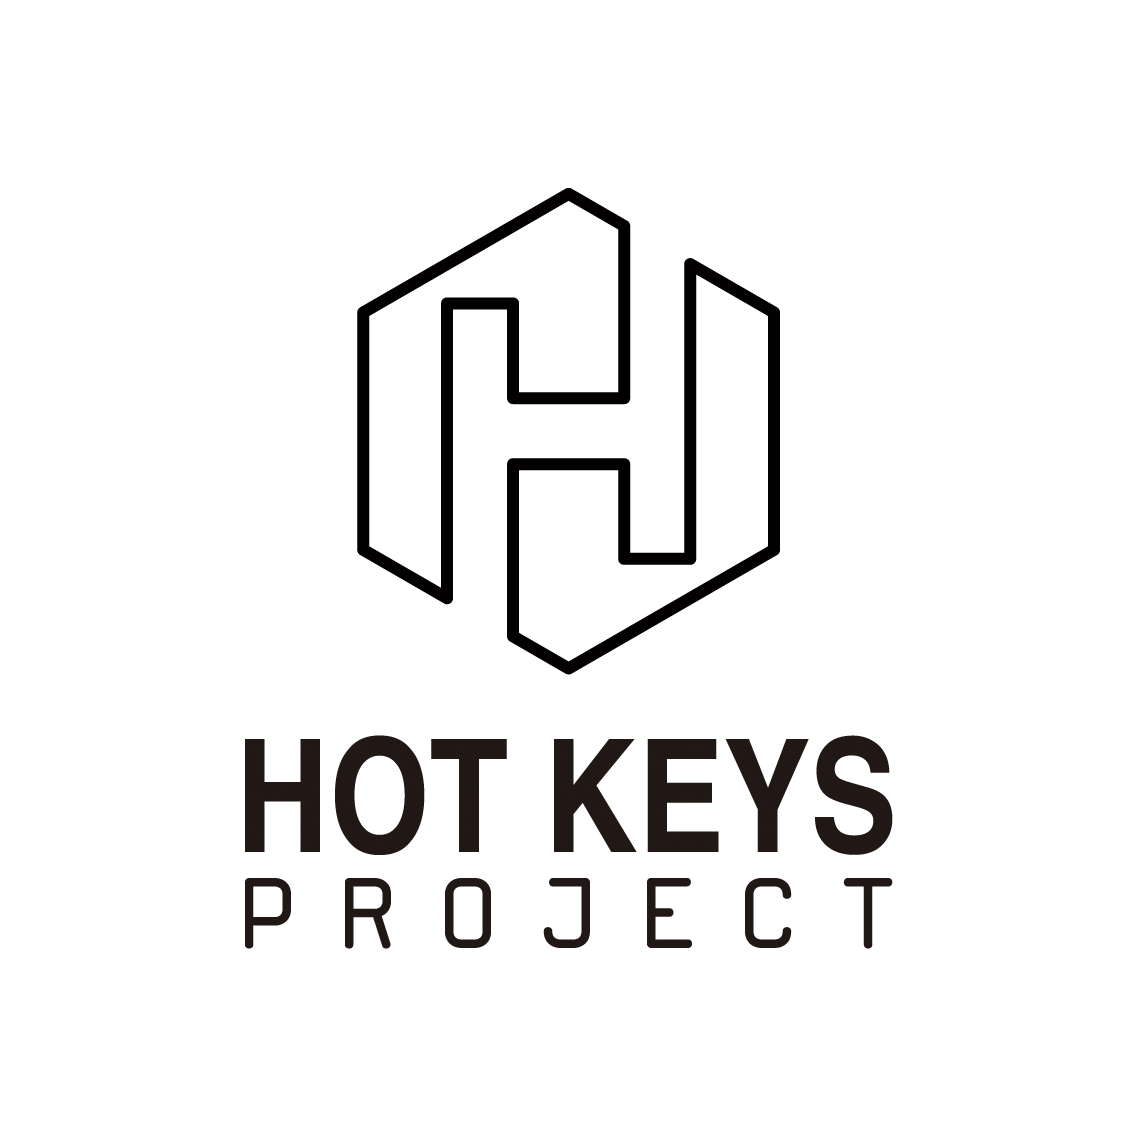 www.hotkeysproject.rocks